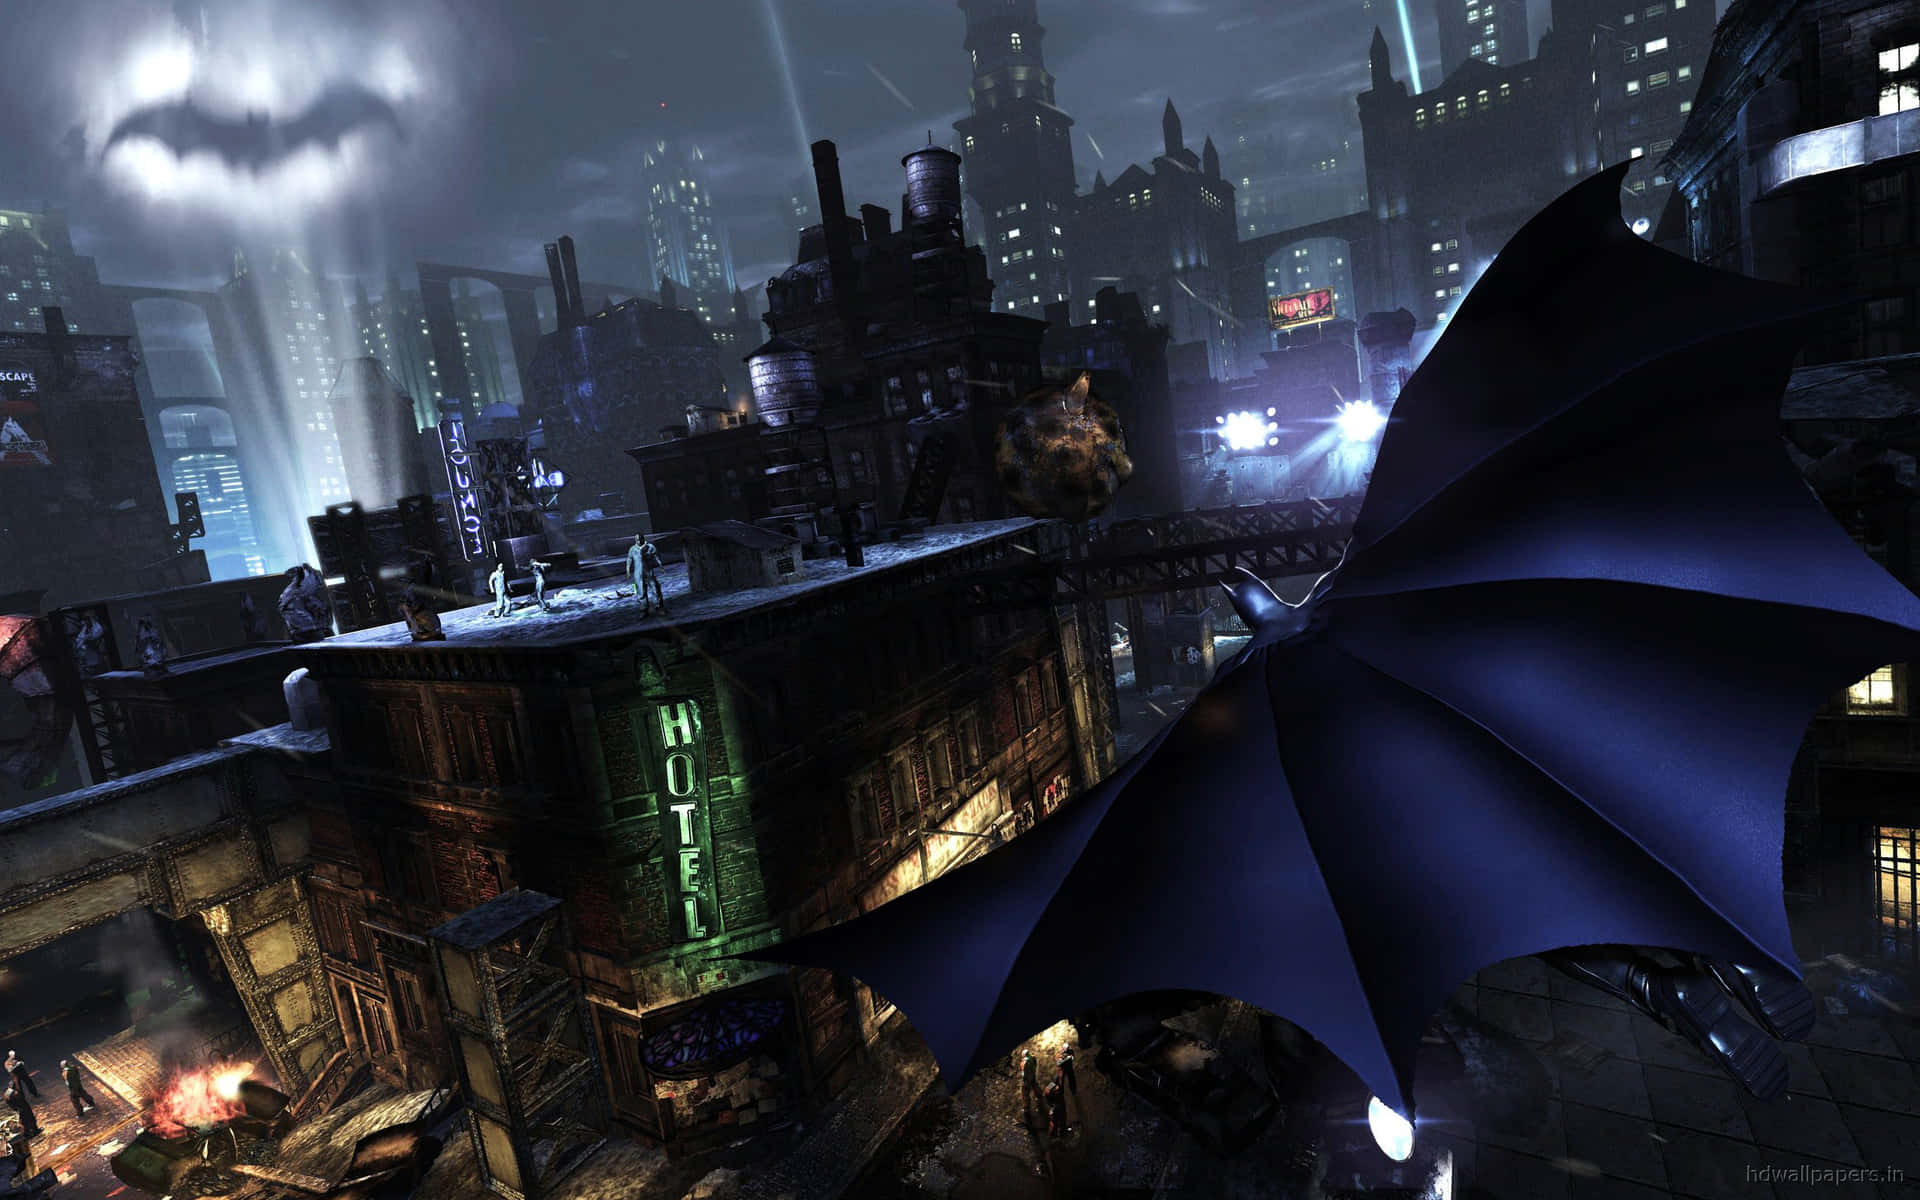 Willkommenin Batman City, Ein Wahrhaftiges Wunder Wallpaper